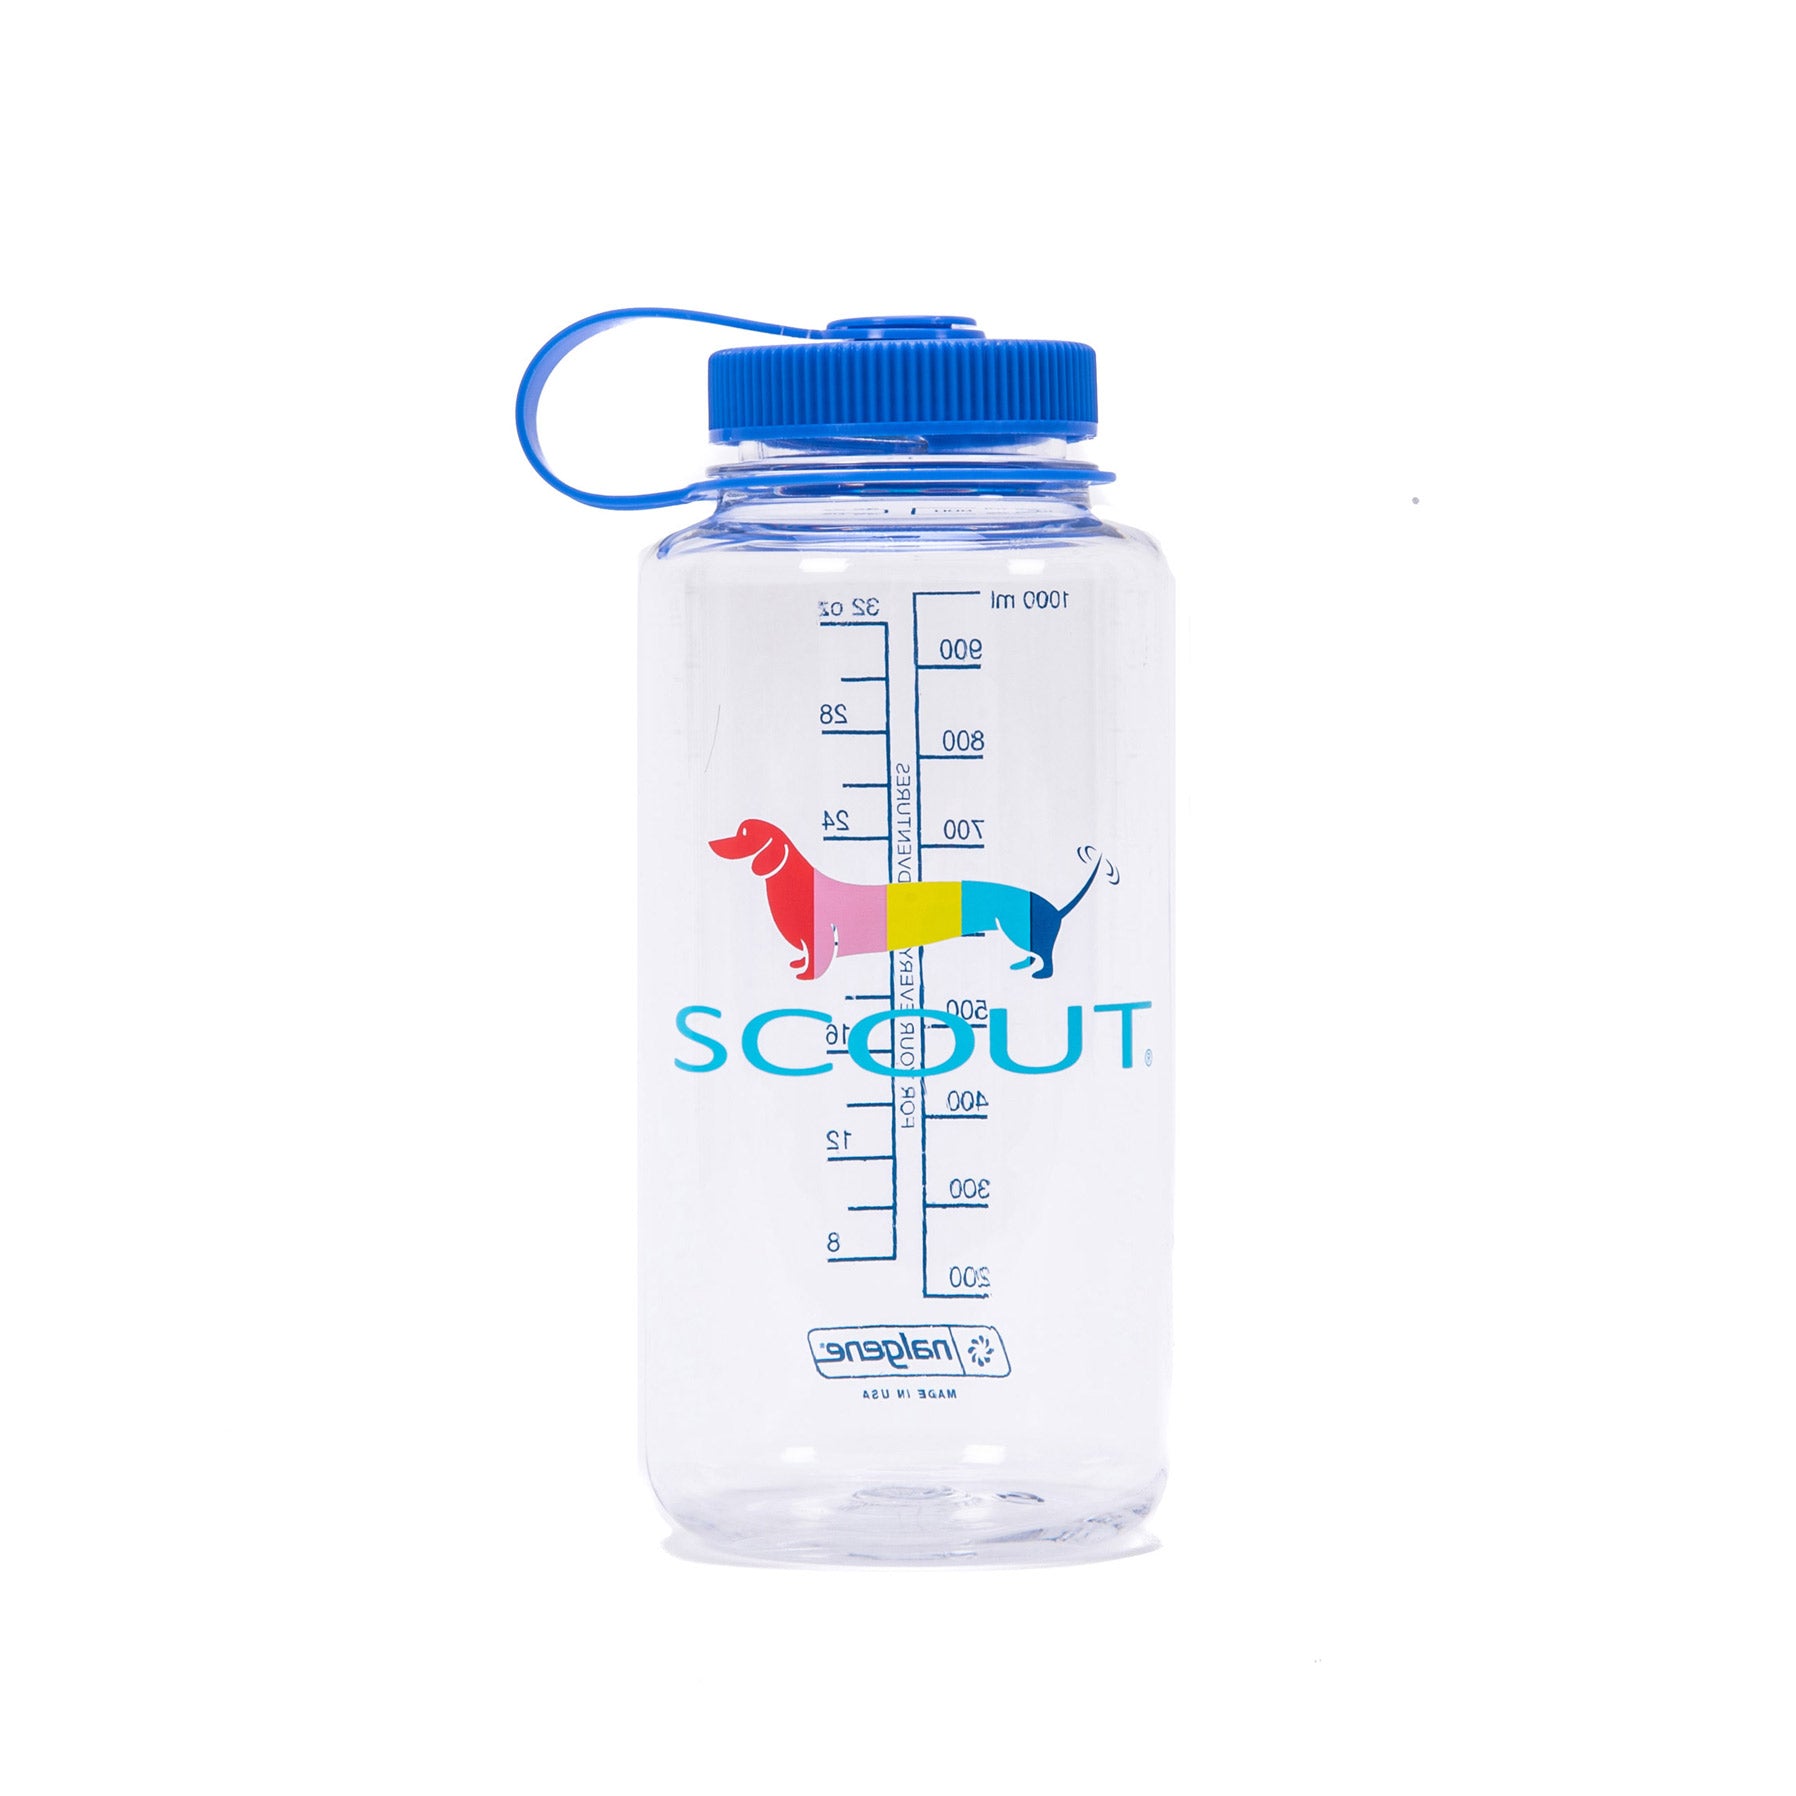 SCOUT Water Bottle